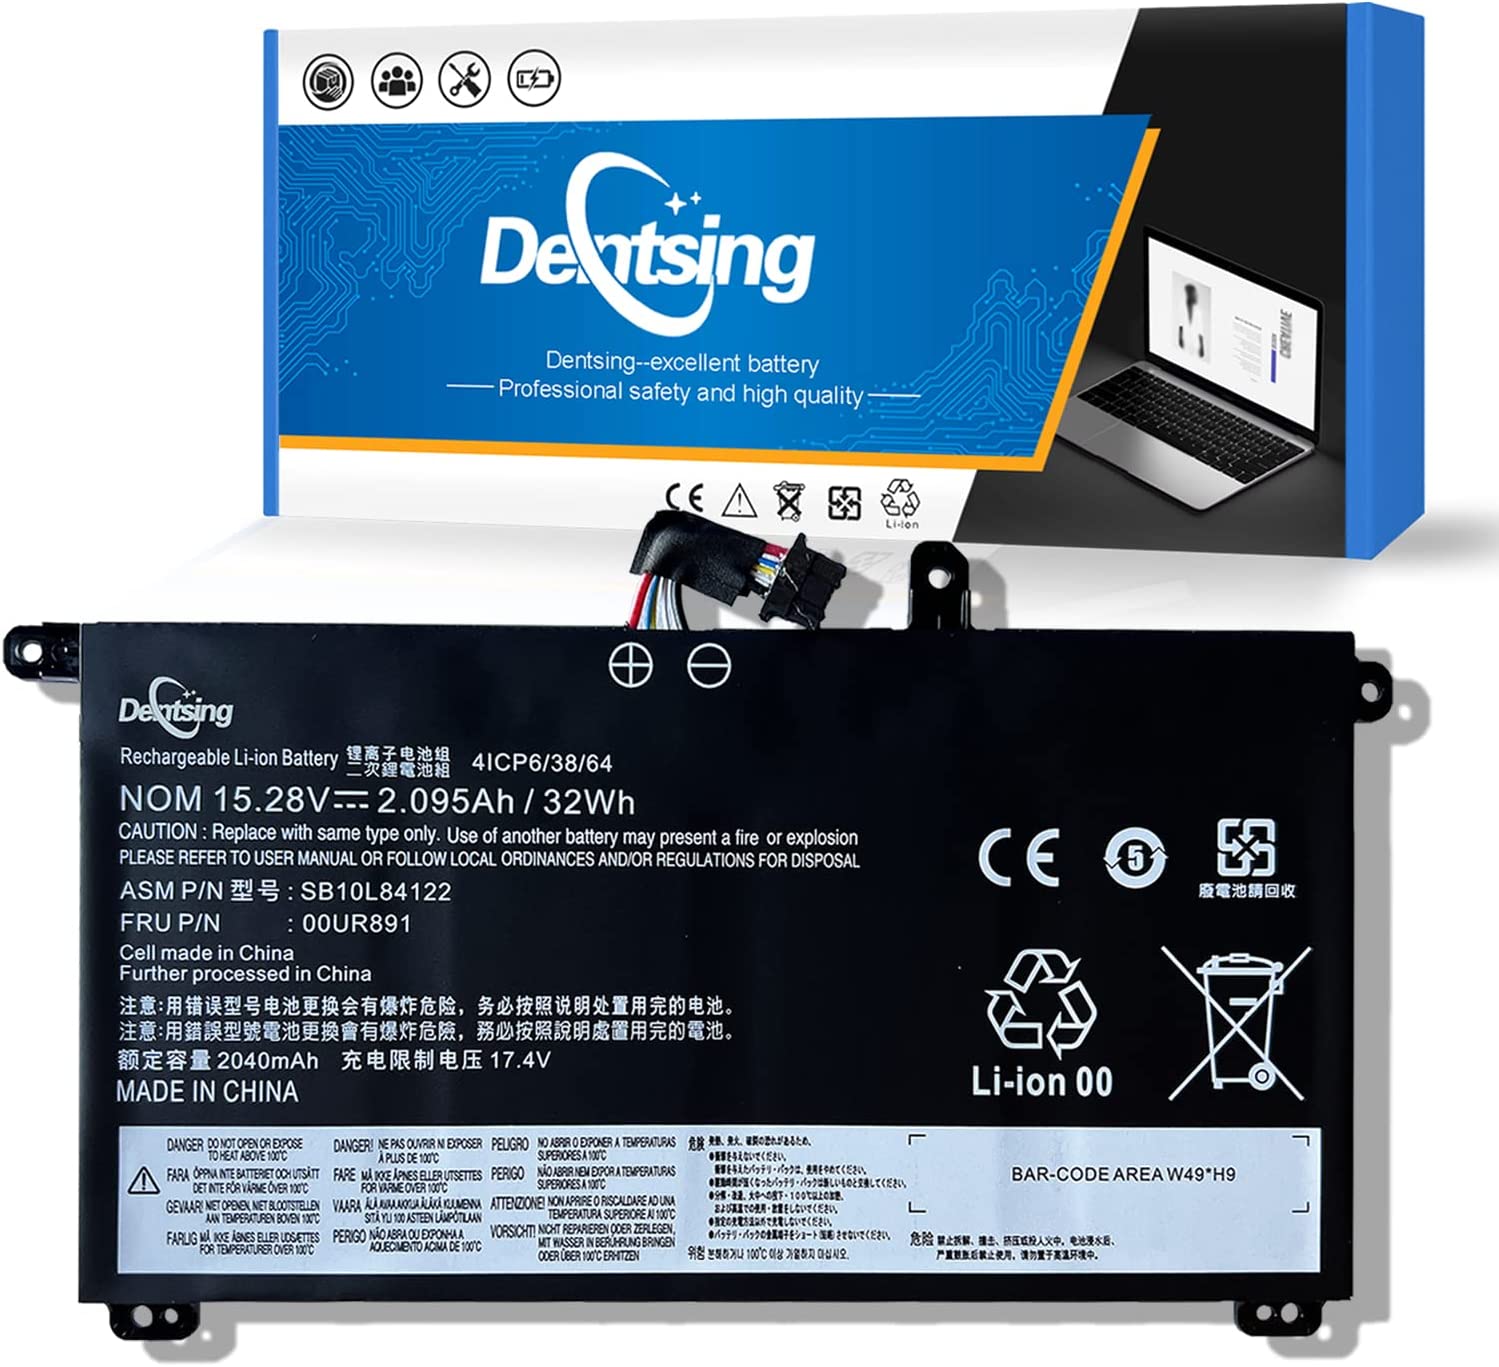 Denstsing 00UR891 15.28v 32Wh/2095mAh SB10L84122 - Batería para portátil compatible con Lenovo Thinkpad T570 T580 P51S P52S Series Notebook 01AV493 SB10L84121